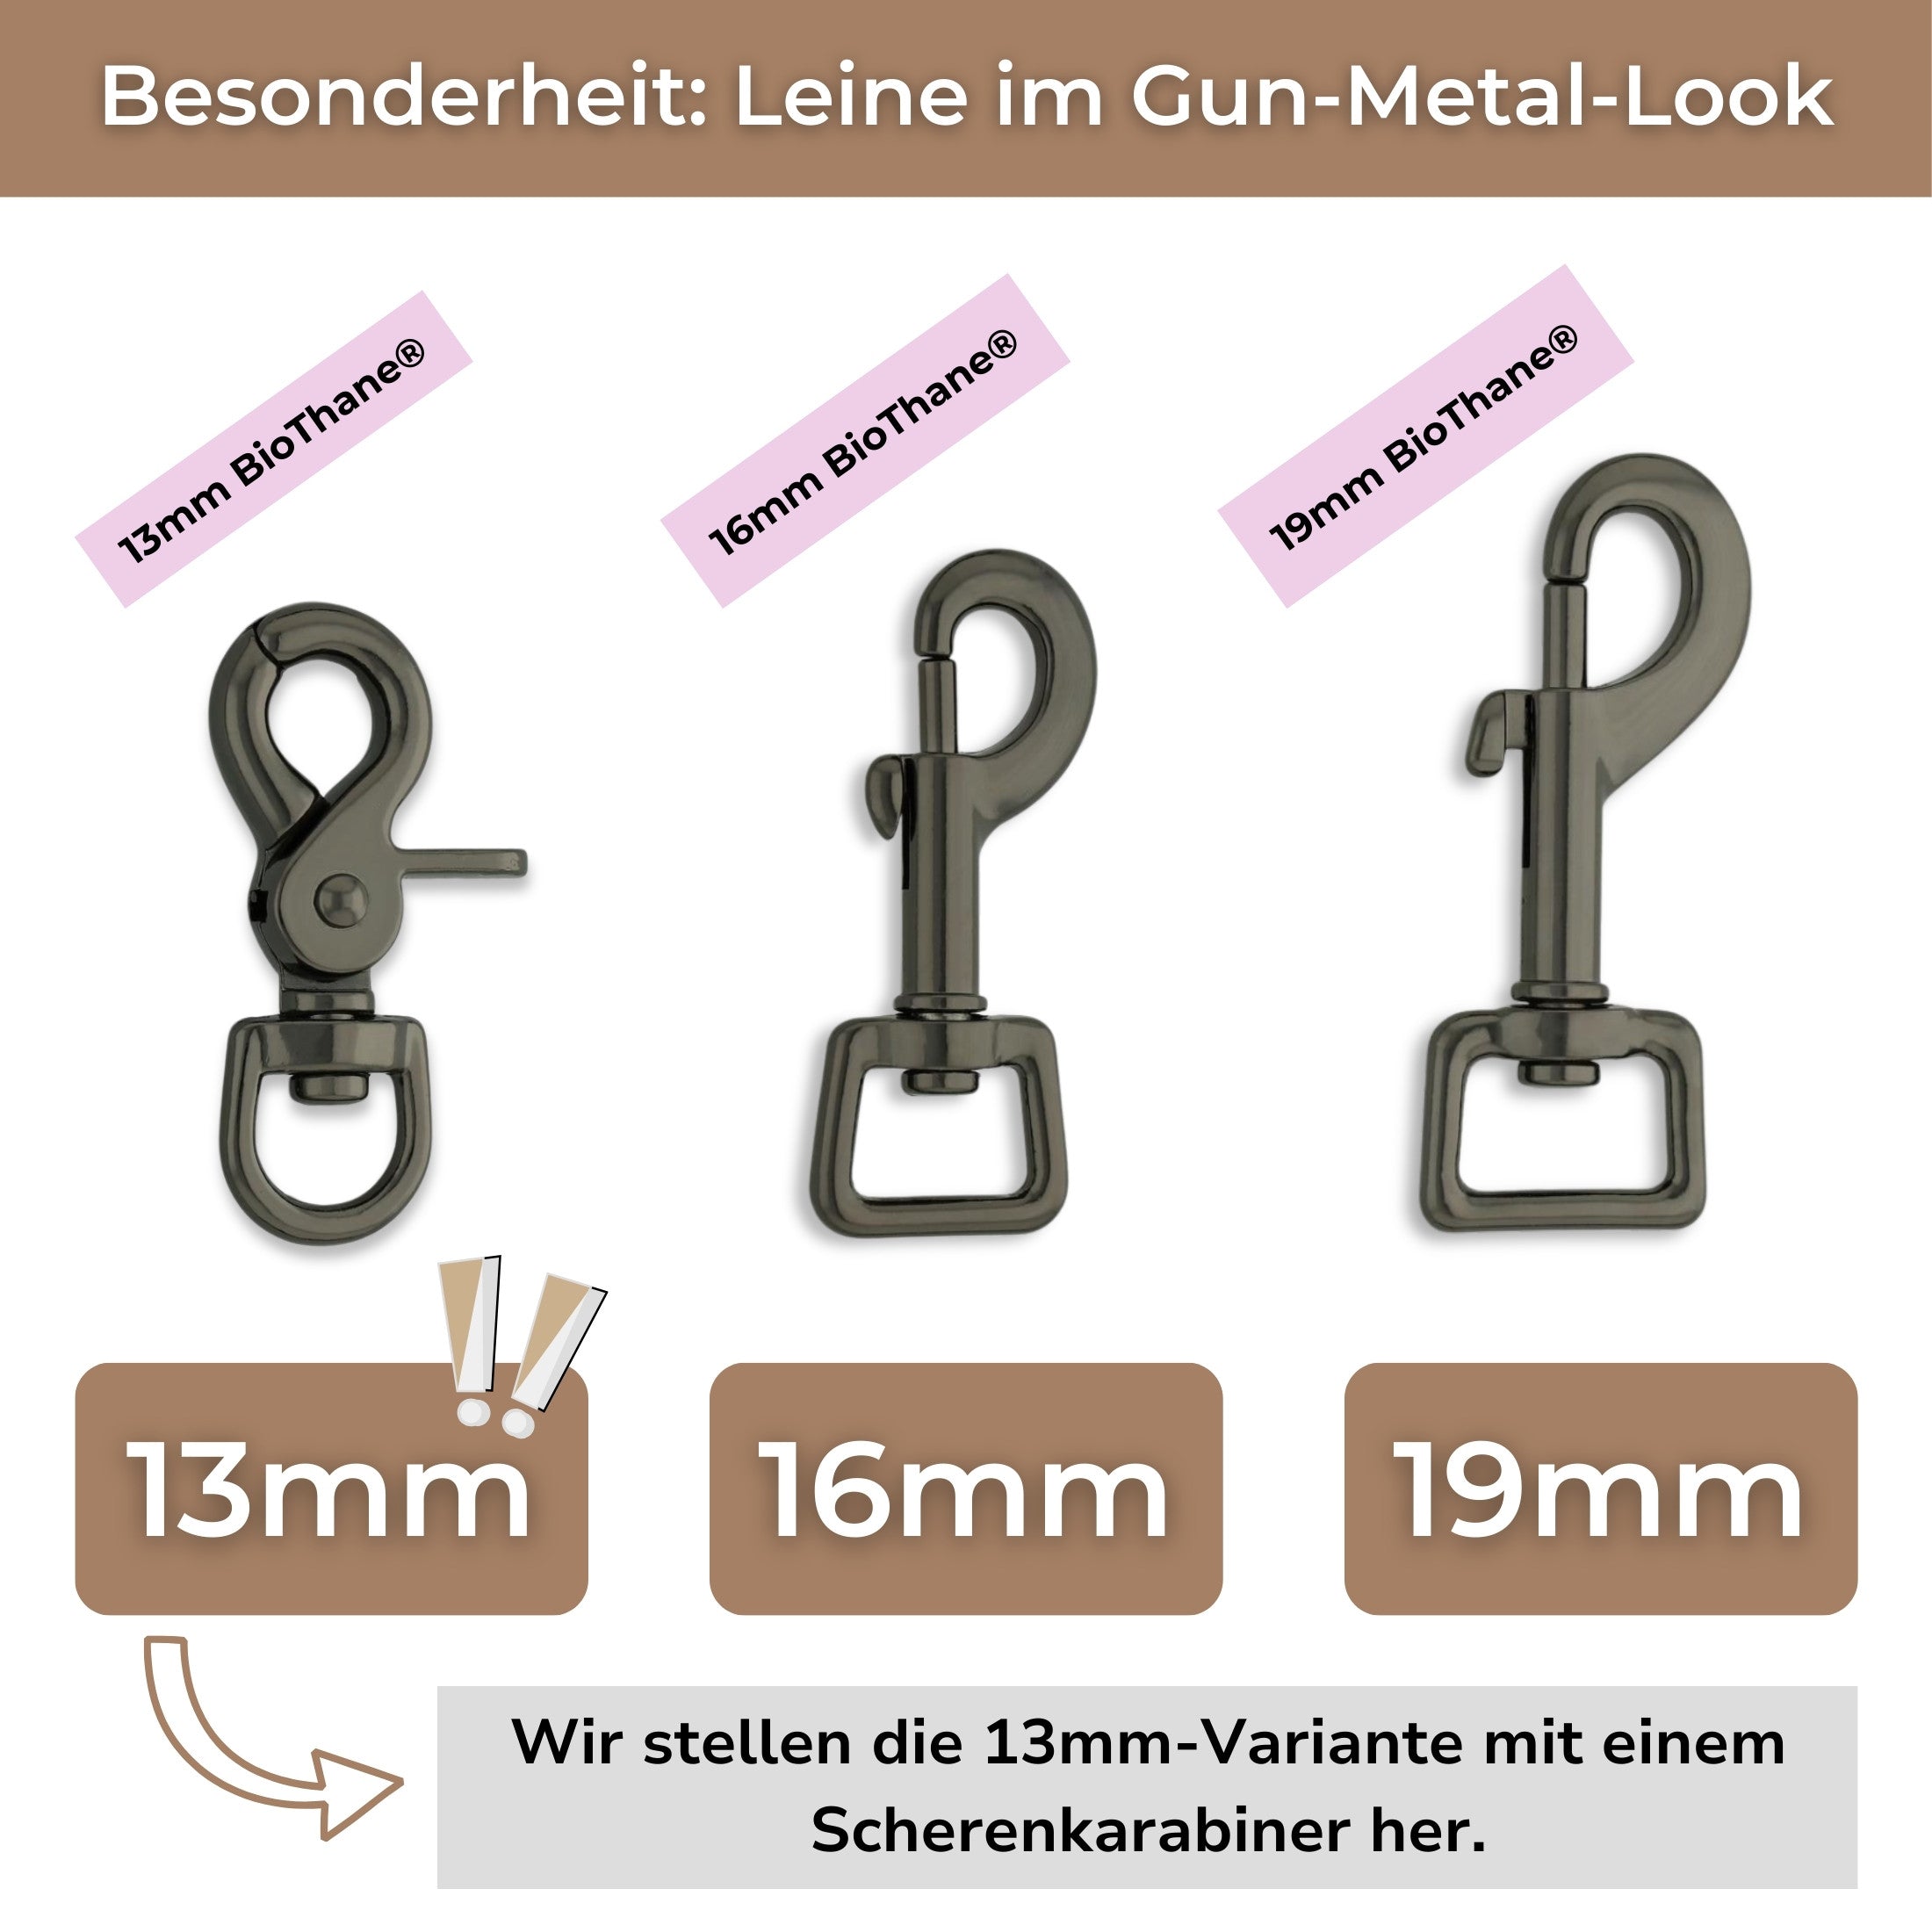 Besonderheit BioThane Leine im Gun-Metal Look